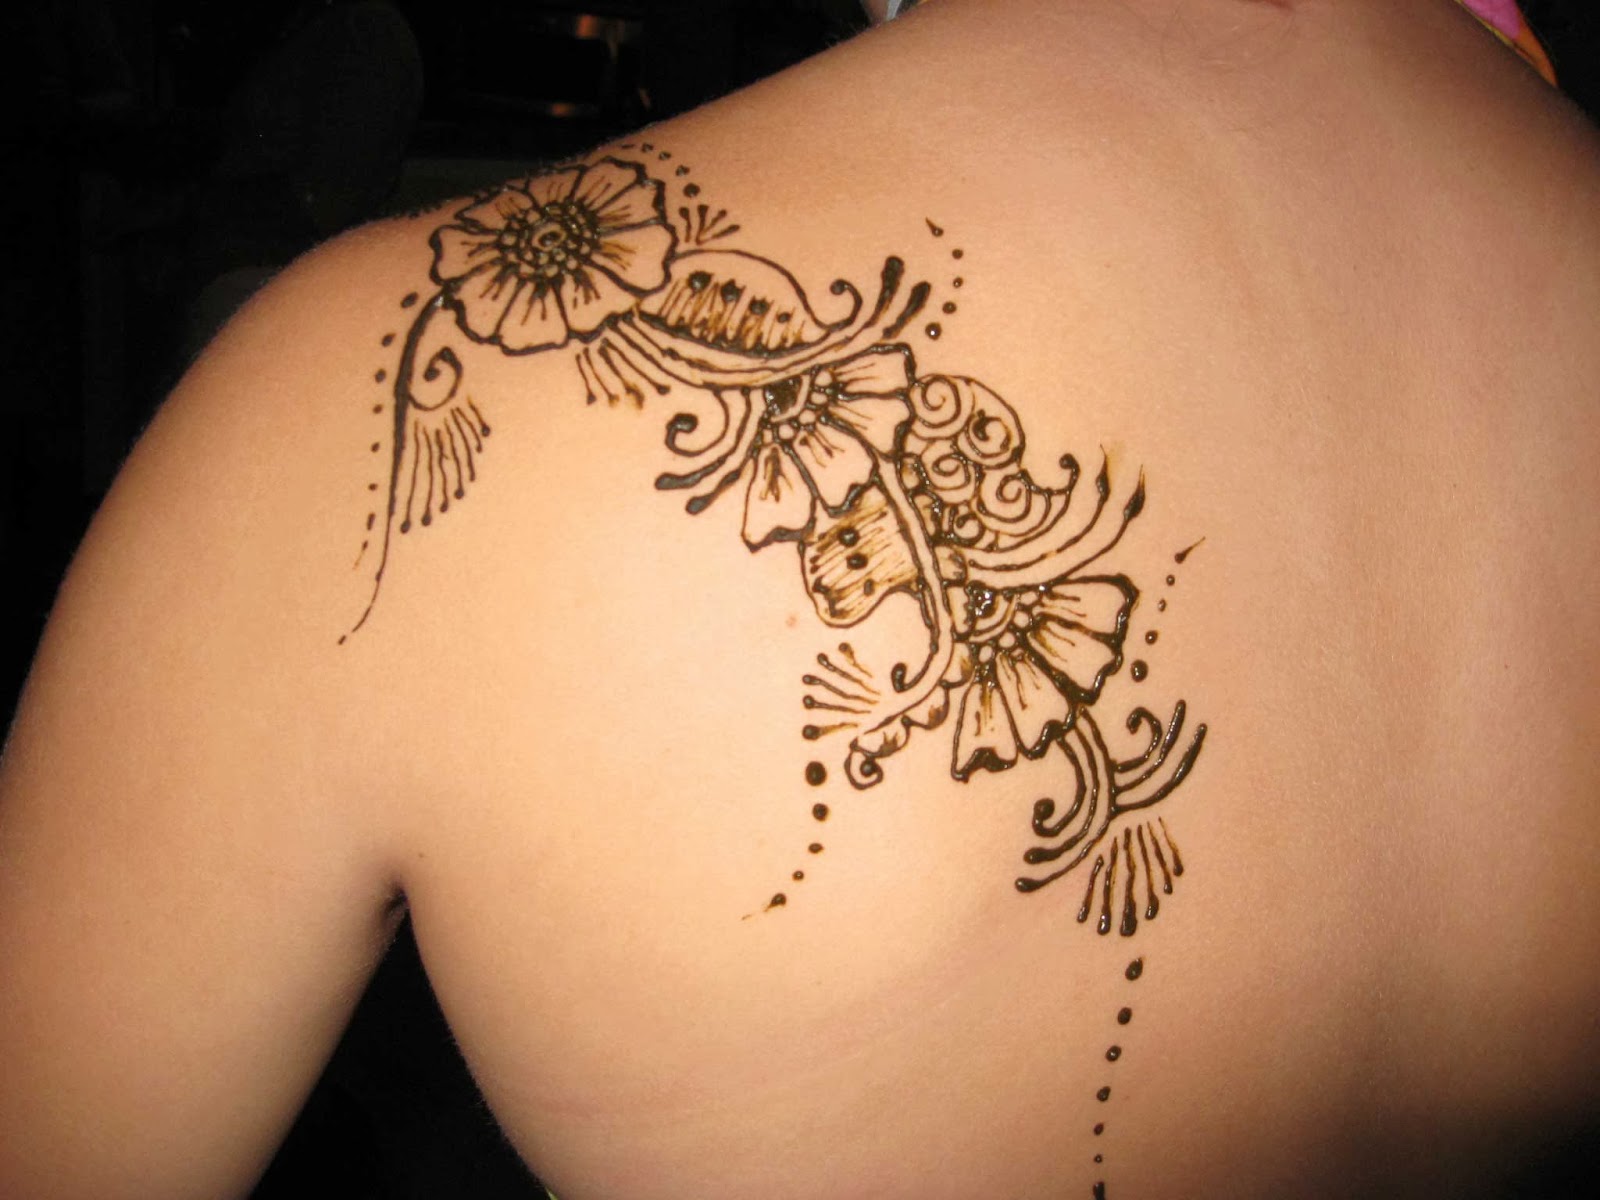 Tattooz Designs January 2013